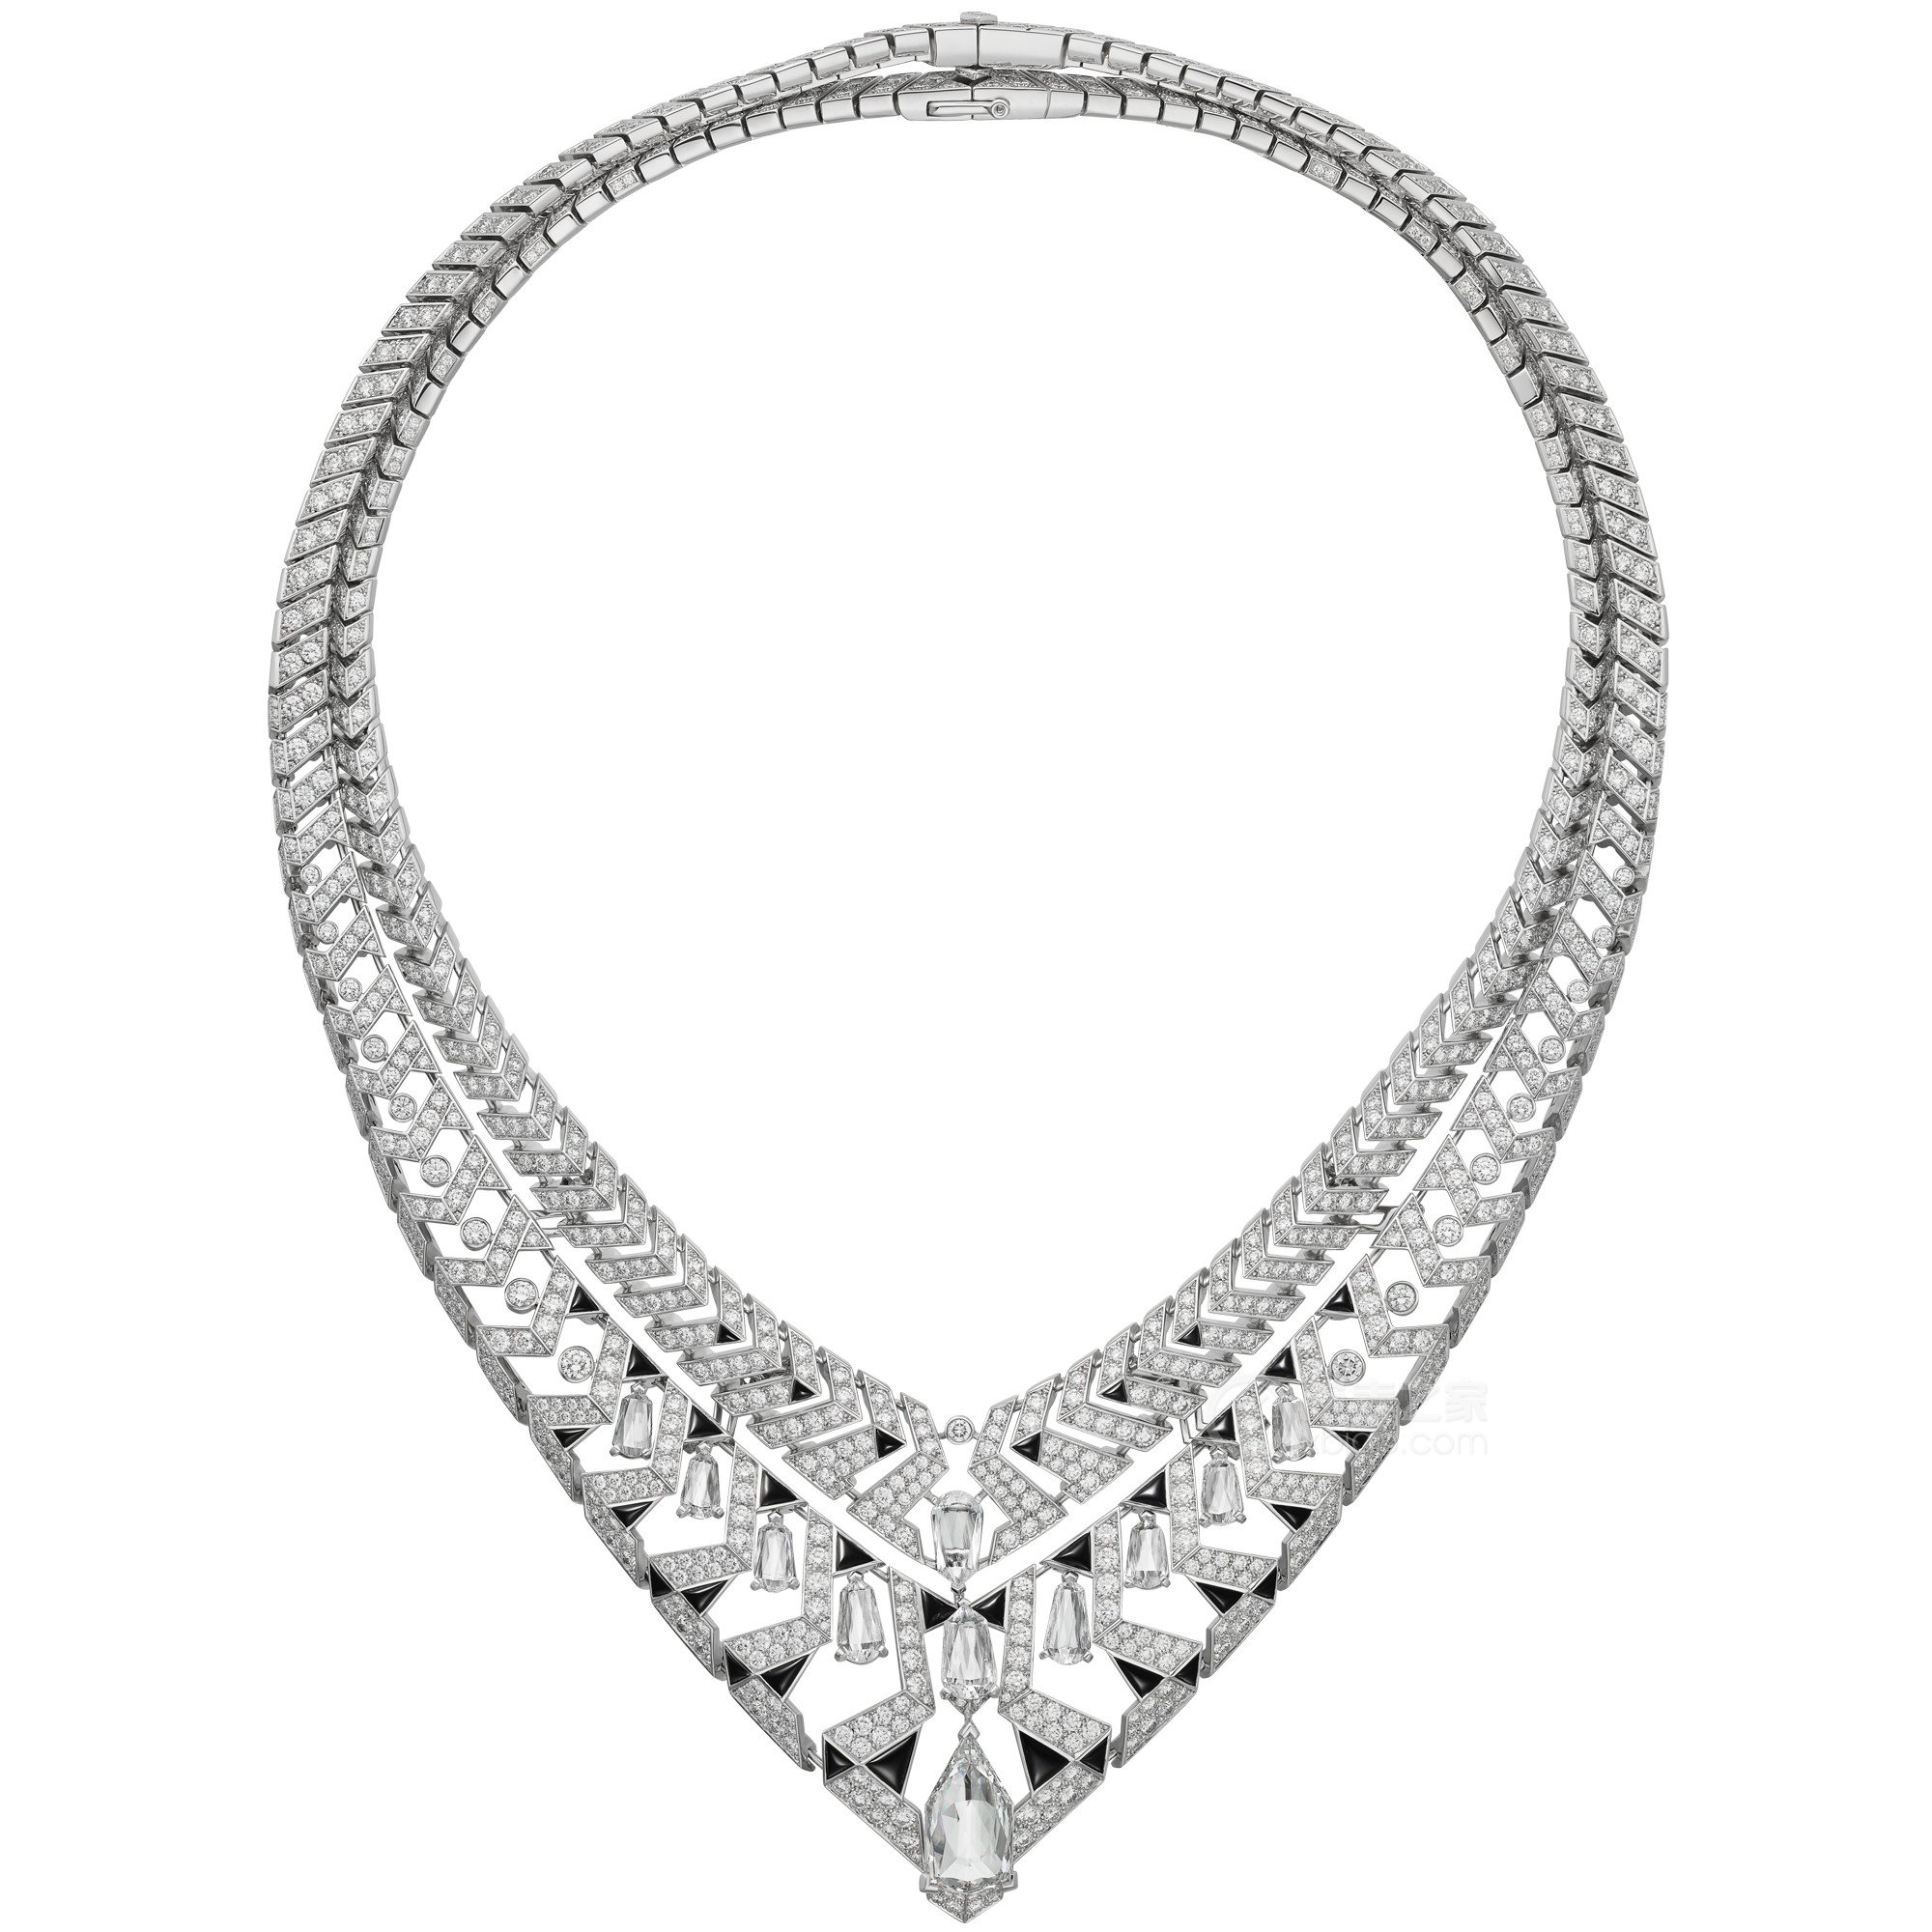 卡地亚LE VOYAGE RECOMMENCÉ高级珠宝系列CLAUSTRA高级珠宝项链项链